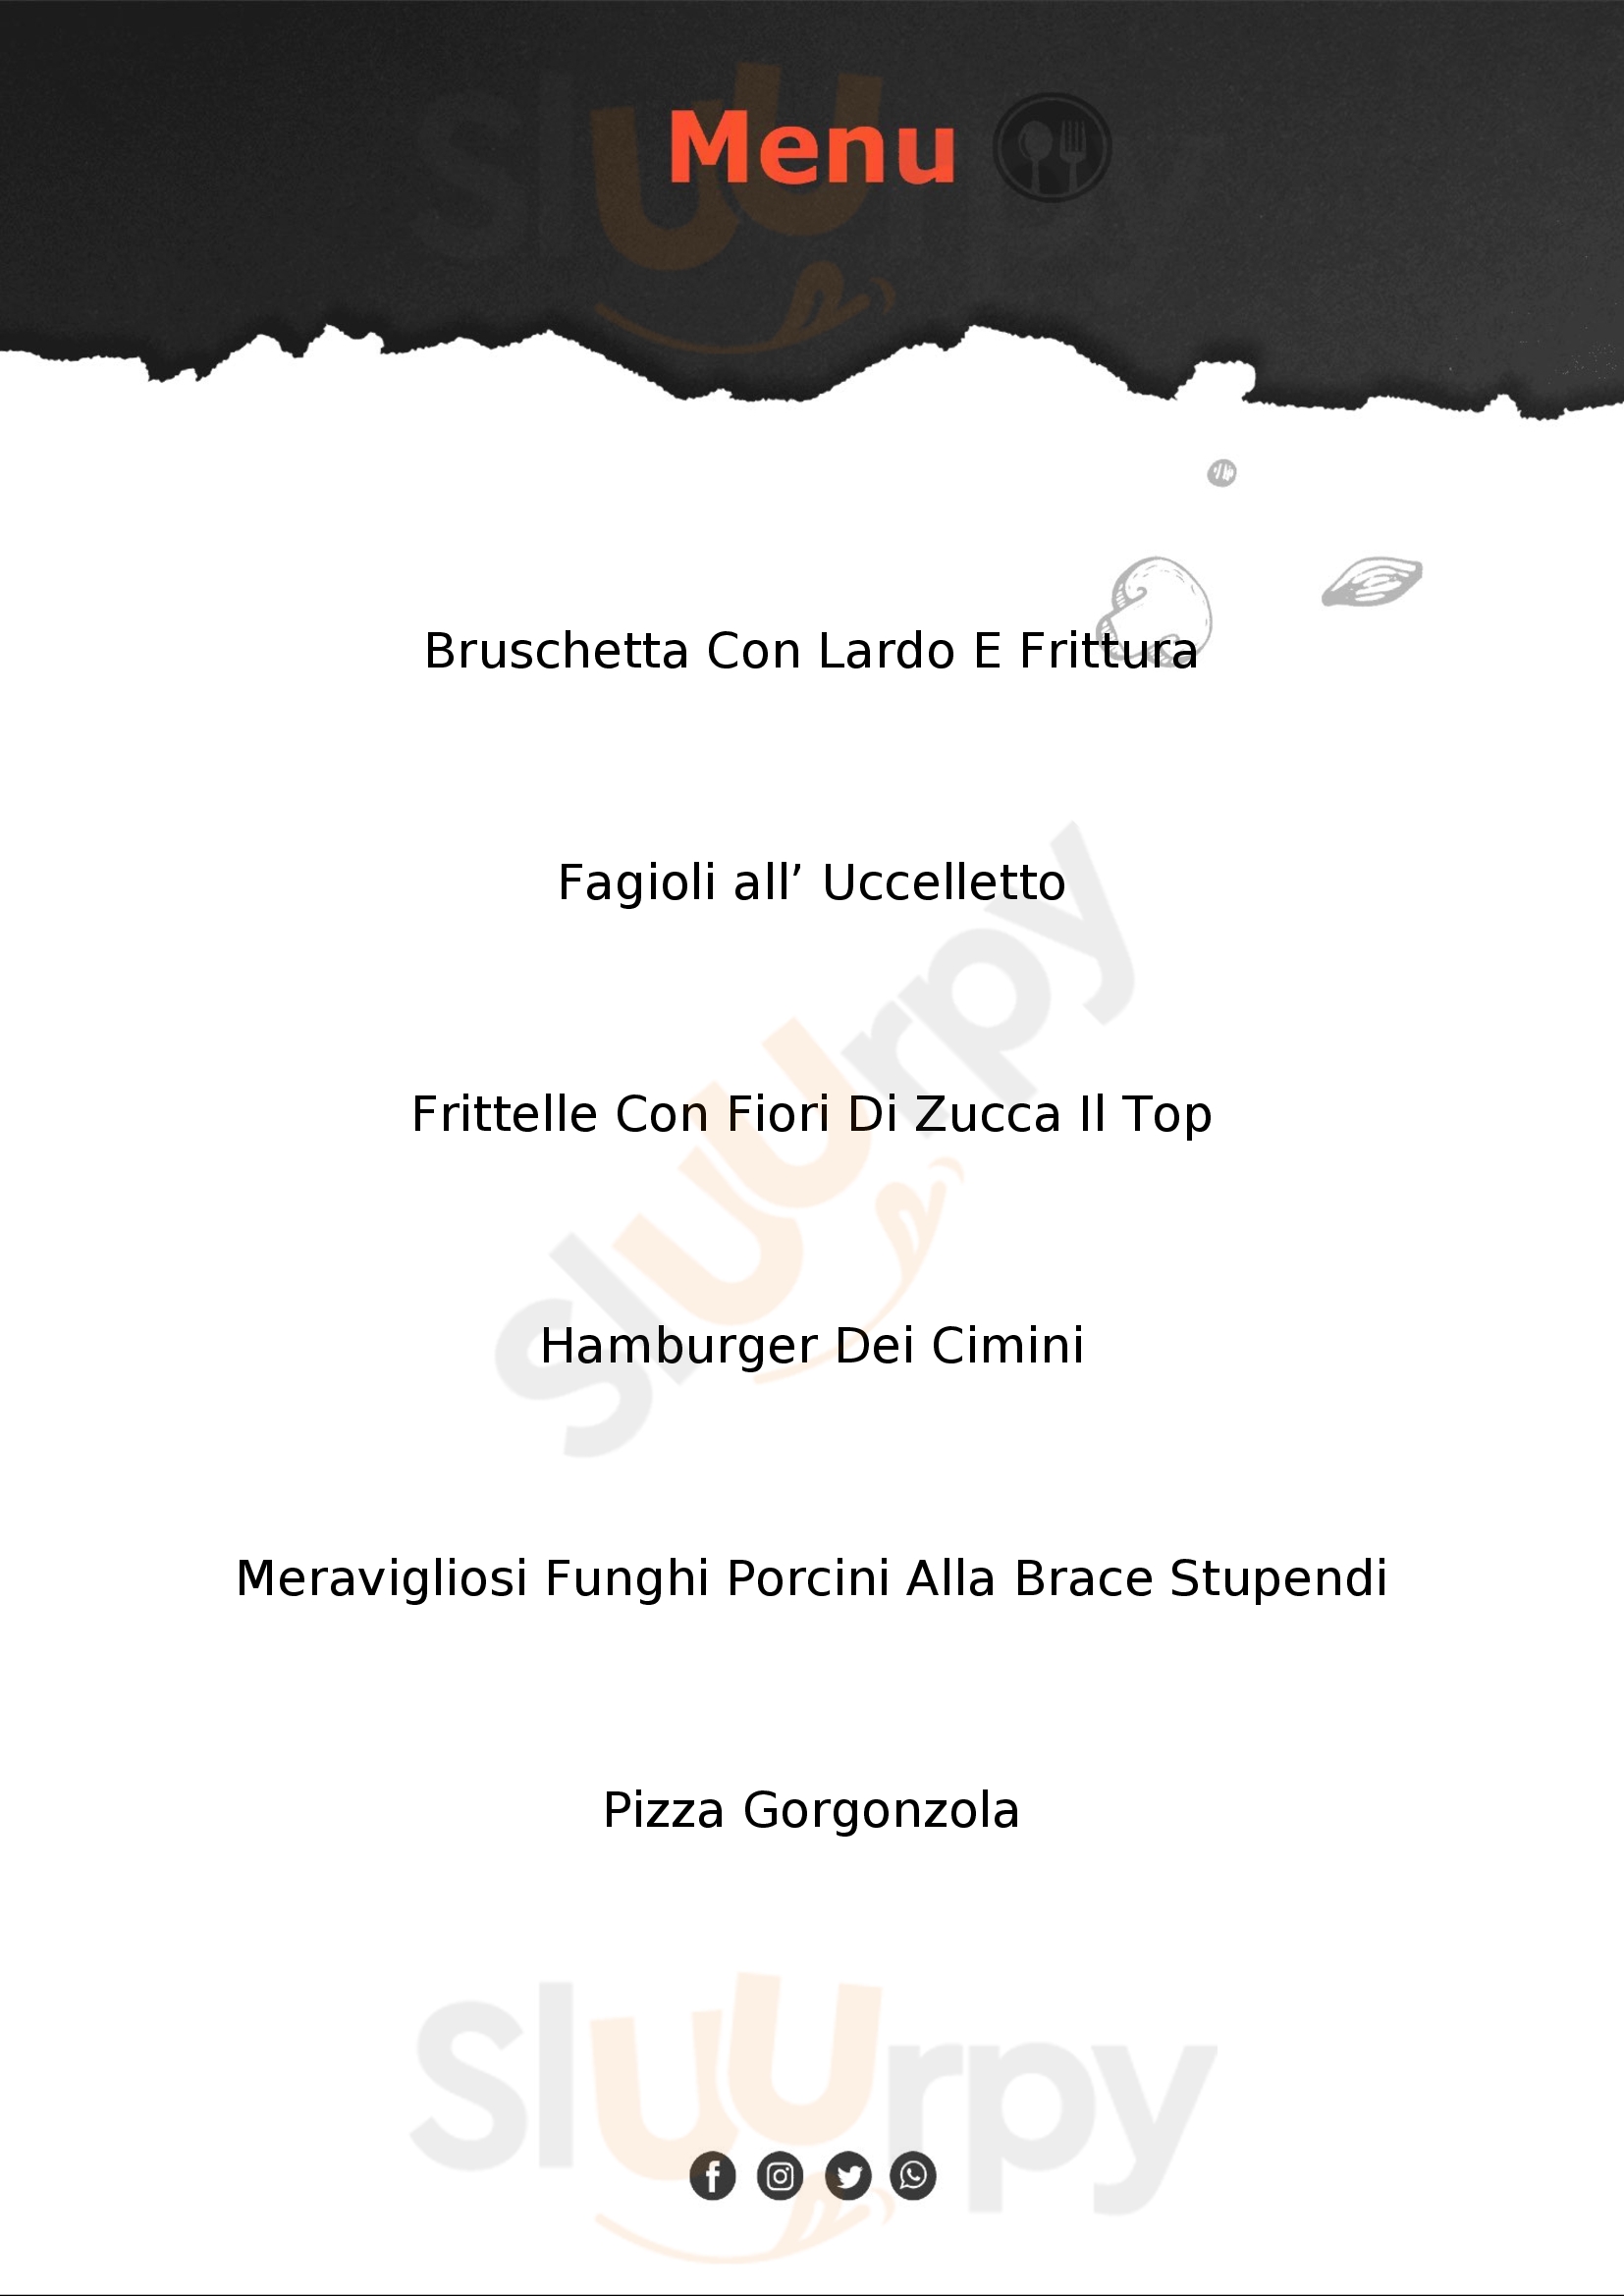 Trattoria-Pizzeria-Enocacioteca il "Moderno" Viterbo menù 1 pagina